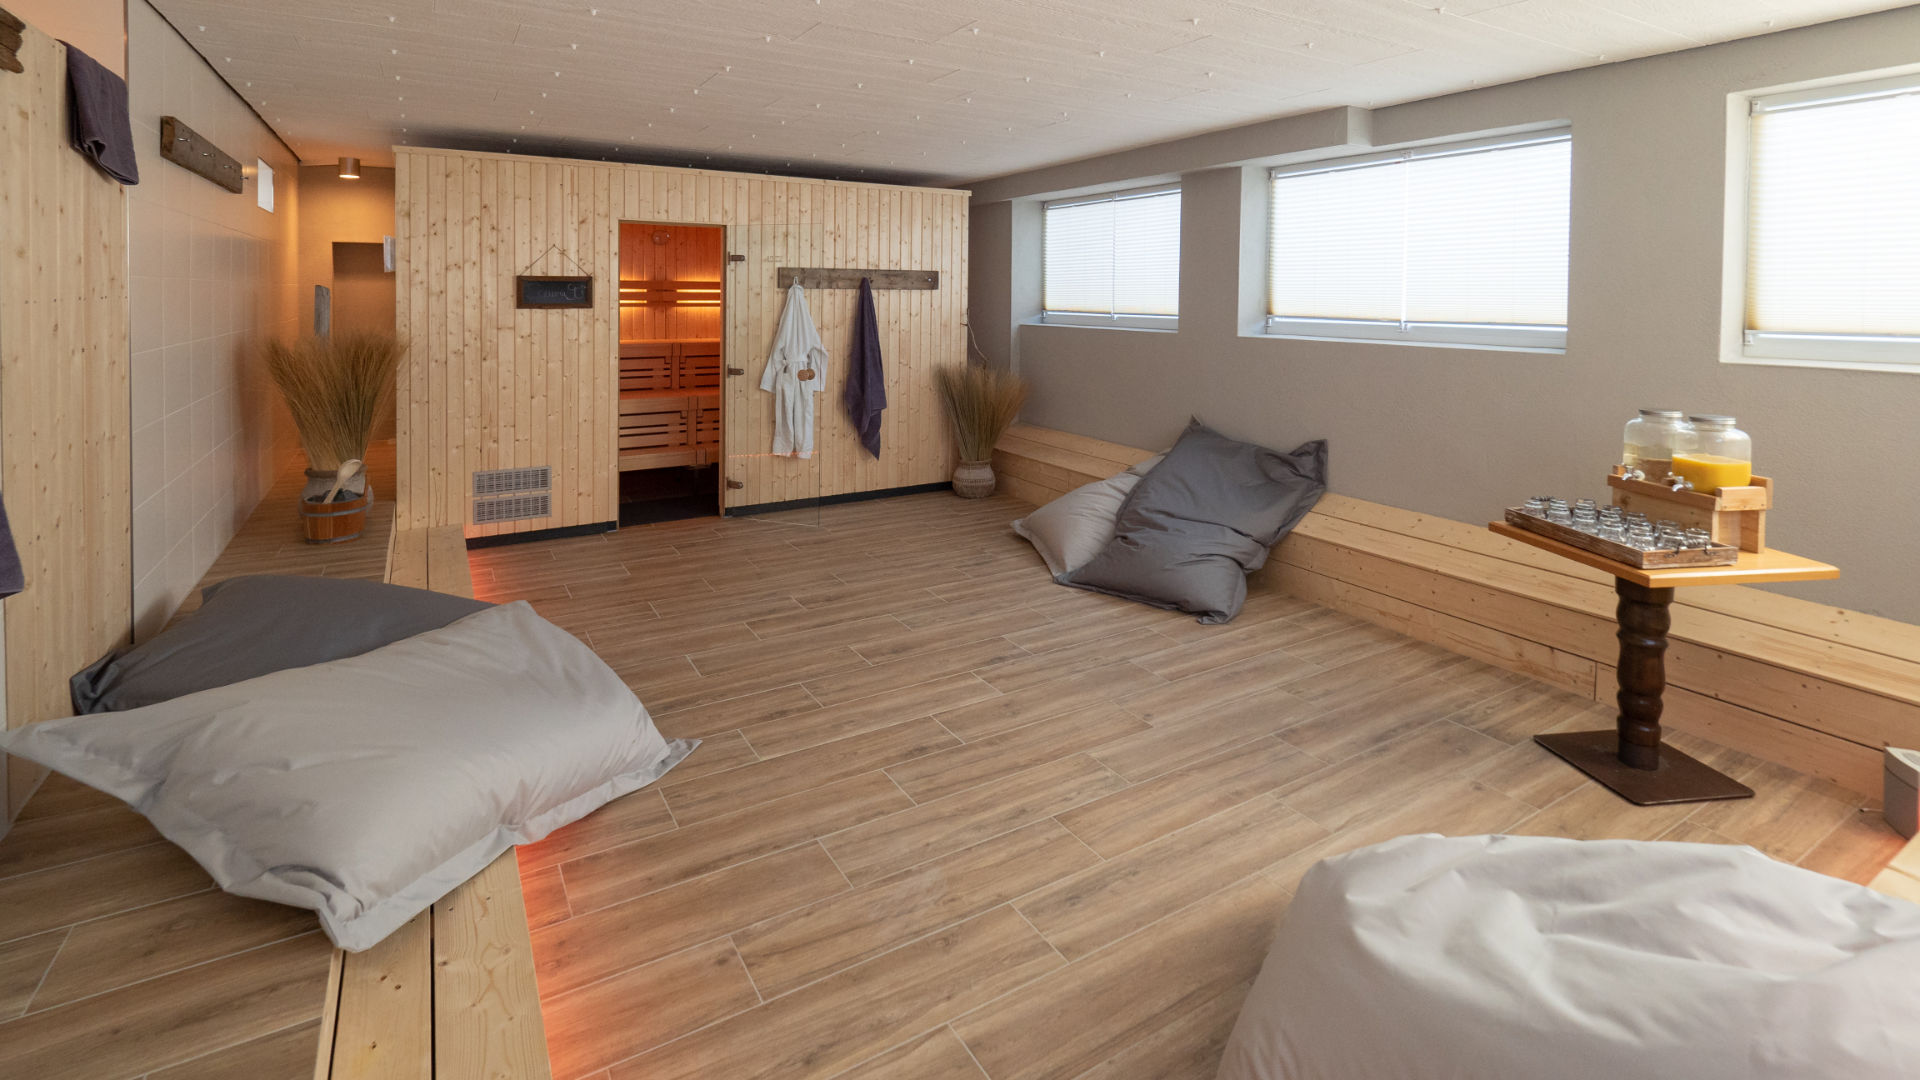 Wellnessbereich - Finnische Sauna mit Ruhefläche